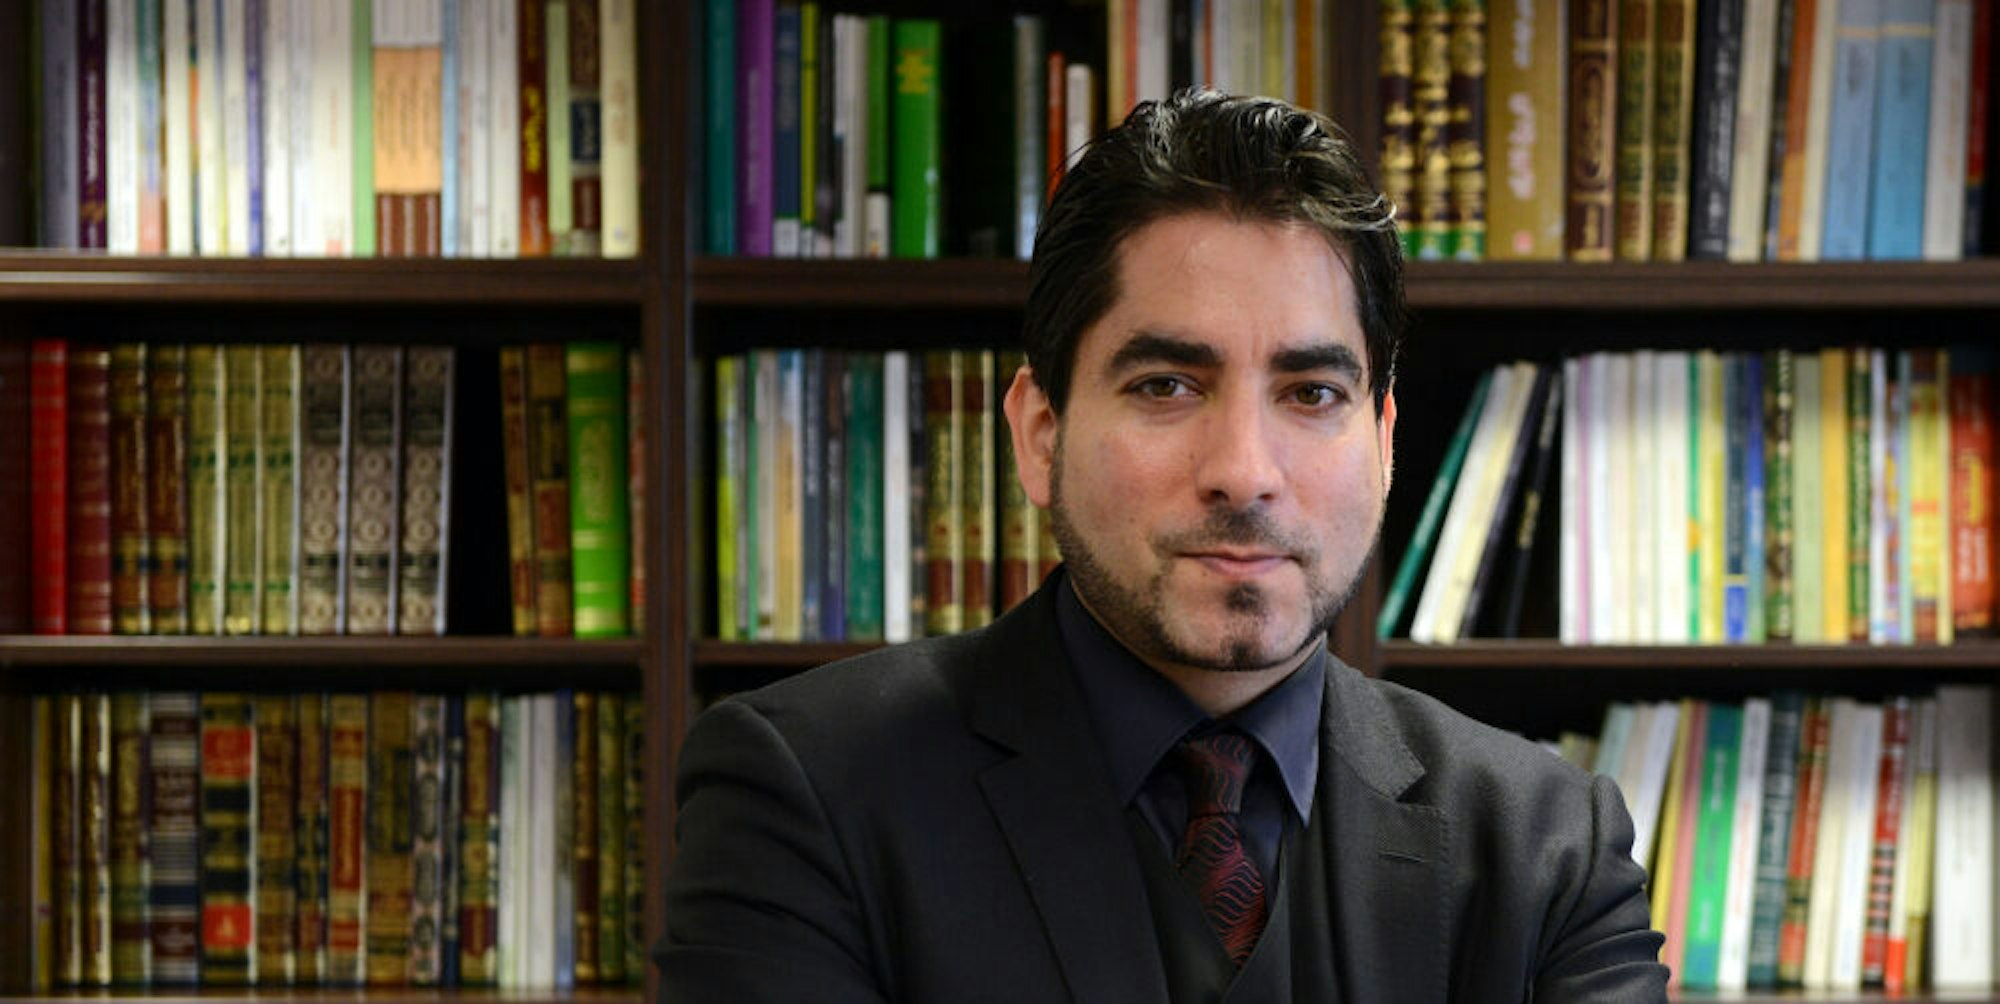 Der Leiter des Zentrums für islamische Theologie, Mouhanad Khorchide, aufgenommen am 19.02.2014 in Münster